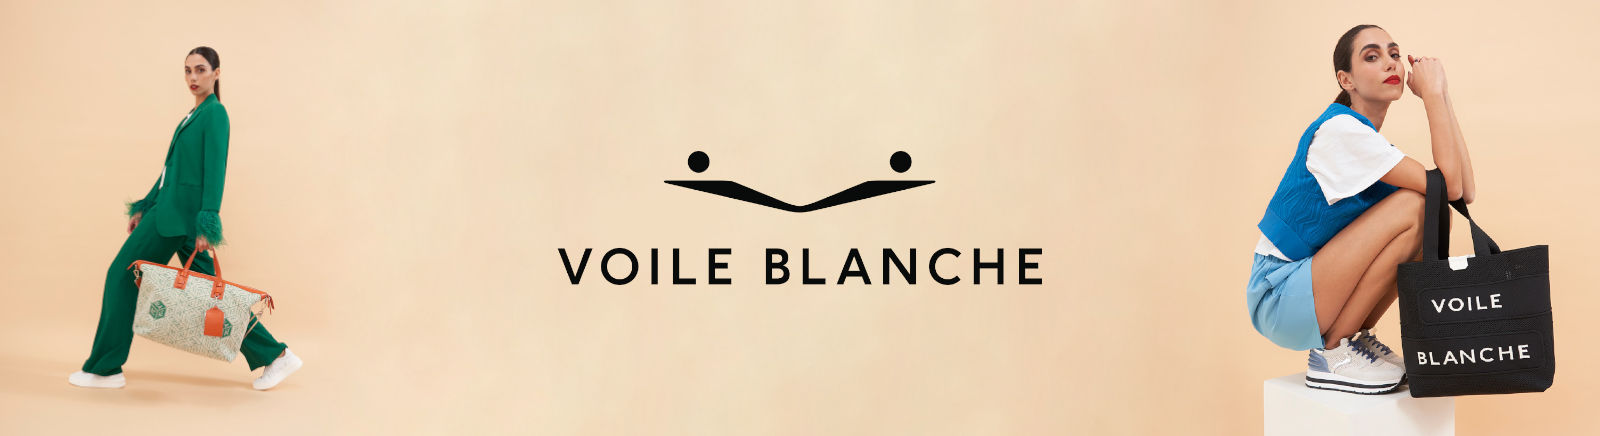 Prange: Voile Blanche Slipper für Damen online kaufen online shoppen